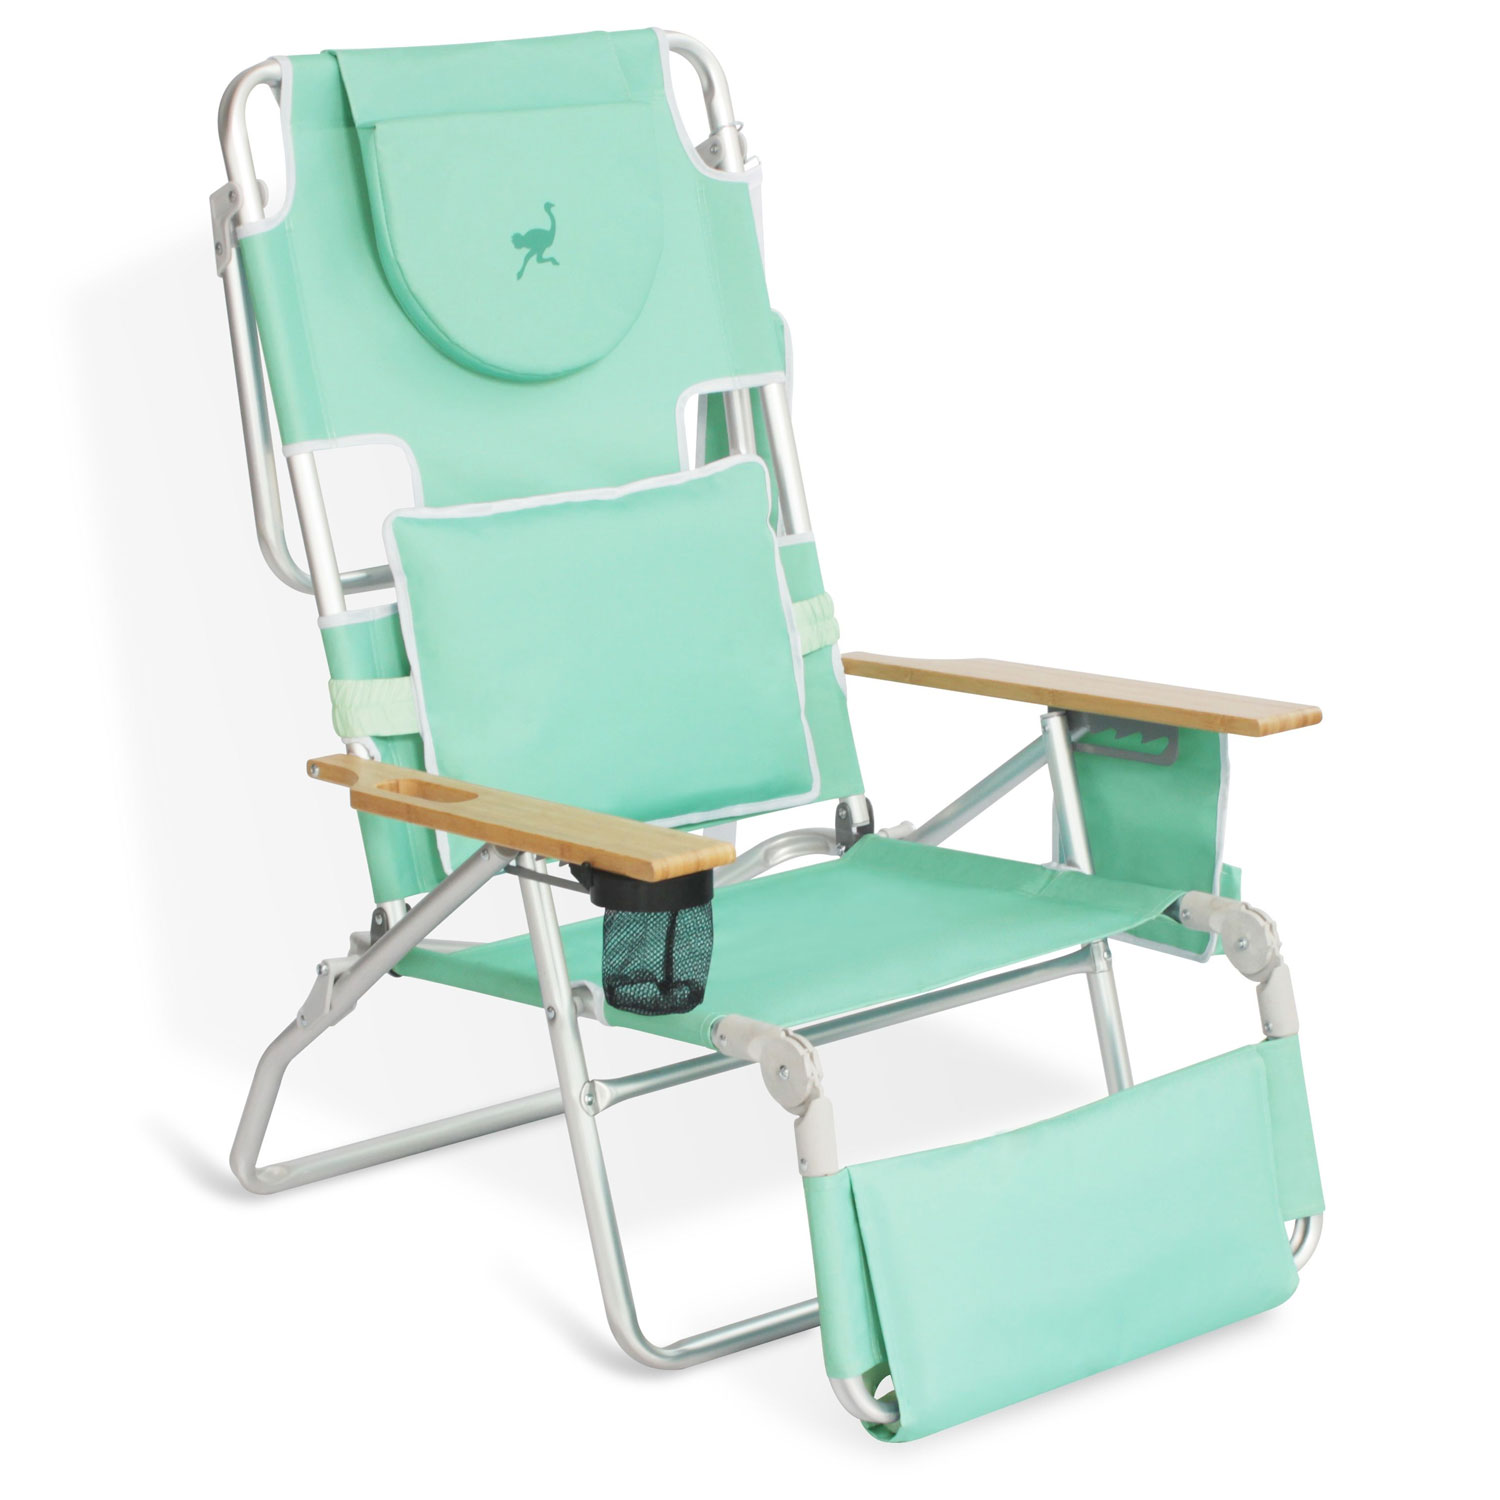  3 N 1 Beach Chair 